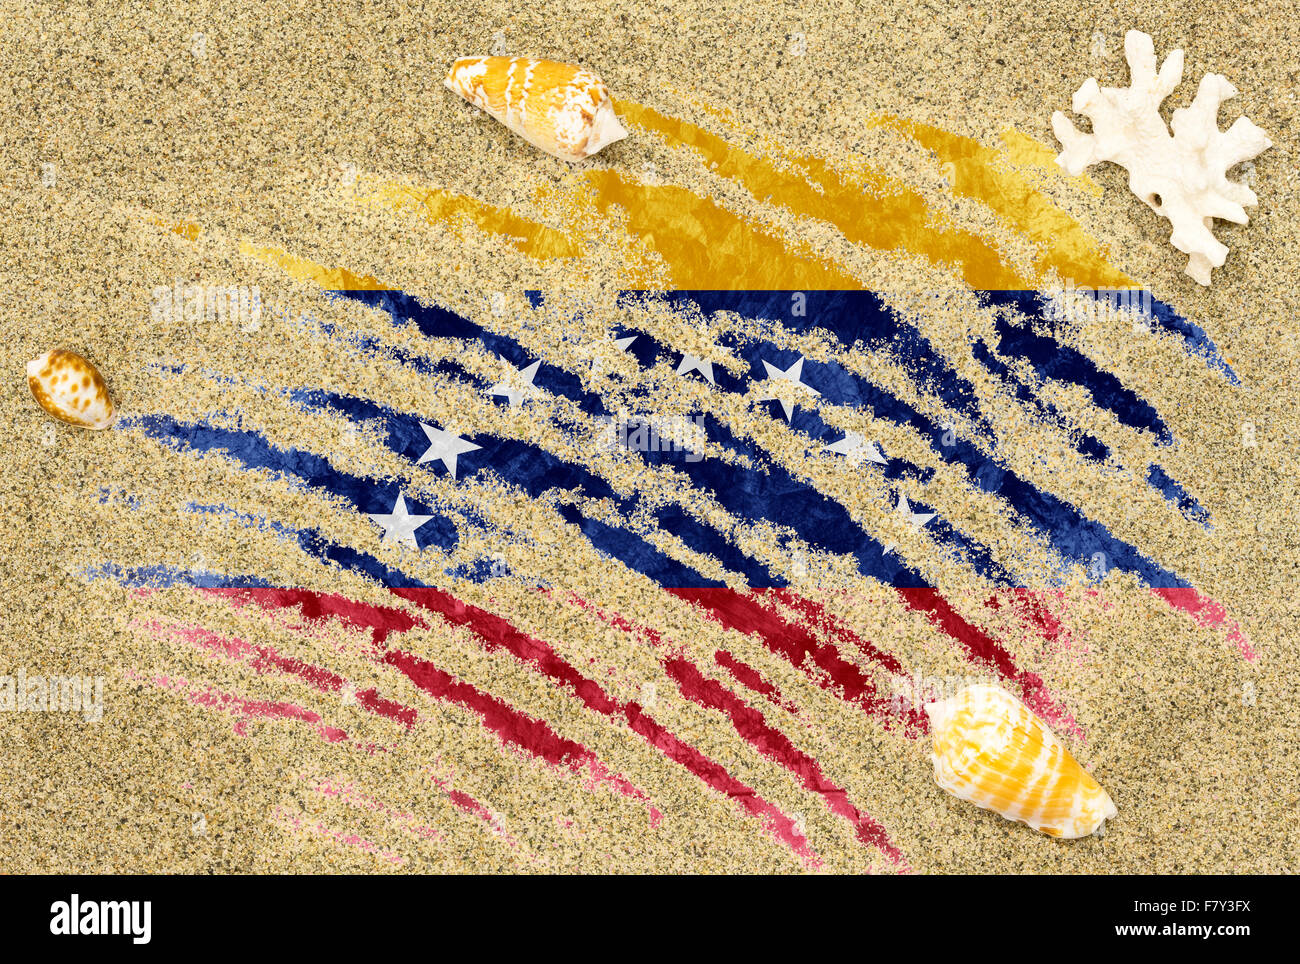 La bandera nacional de Venezuela bajo un fondo de playa con arena, conchas marinas y arrecifes Foto de stock